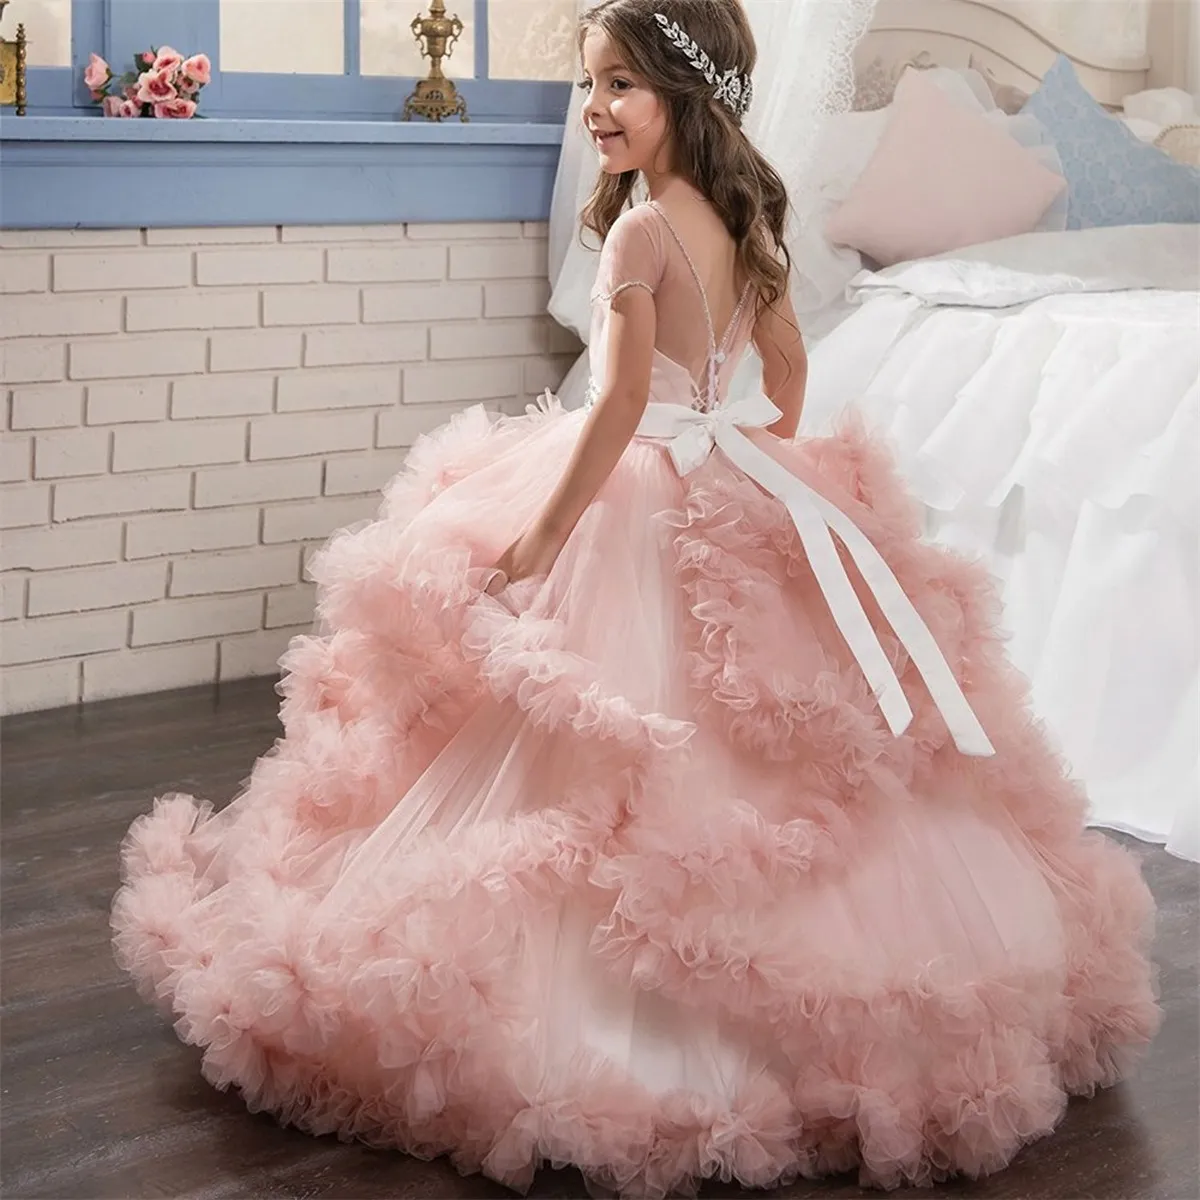 Prinzessin Blume Mädchen Kleider 2018 mit Perlen Sash Fly Cloud Tiers Schichten Ballkleid erste Kommunion Kleid für kleine Mädchen Sweep Zug